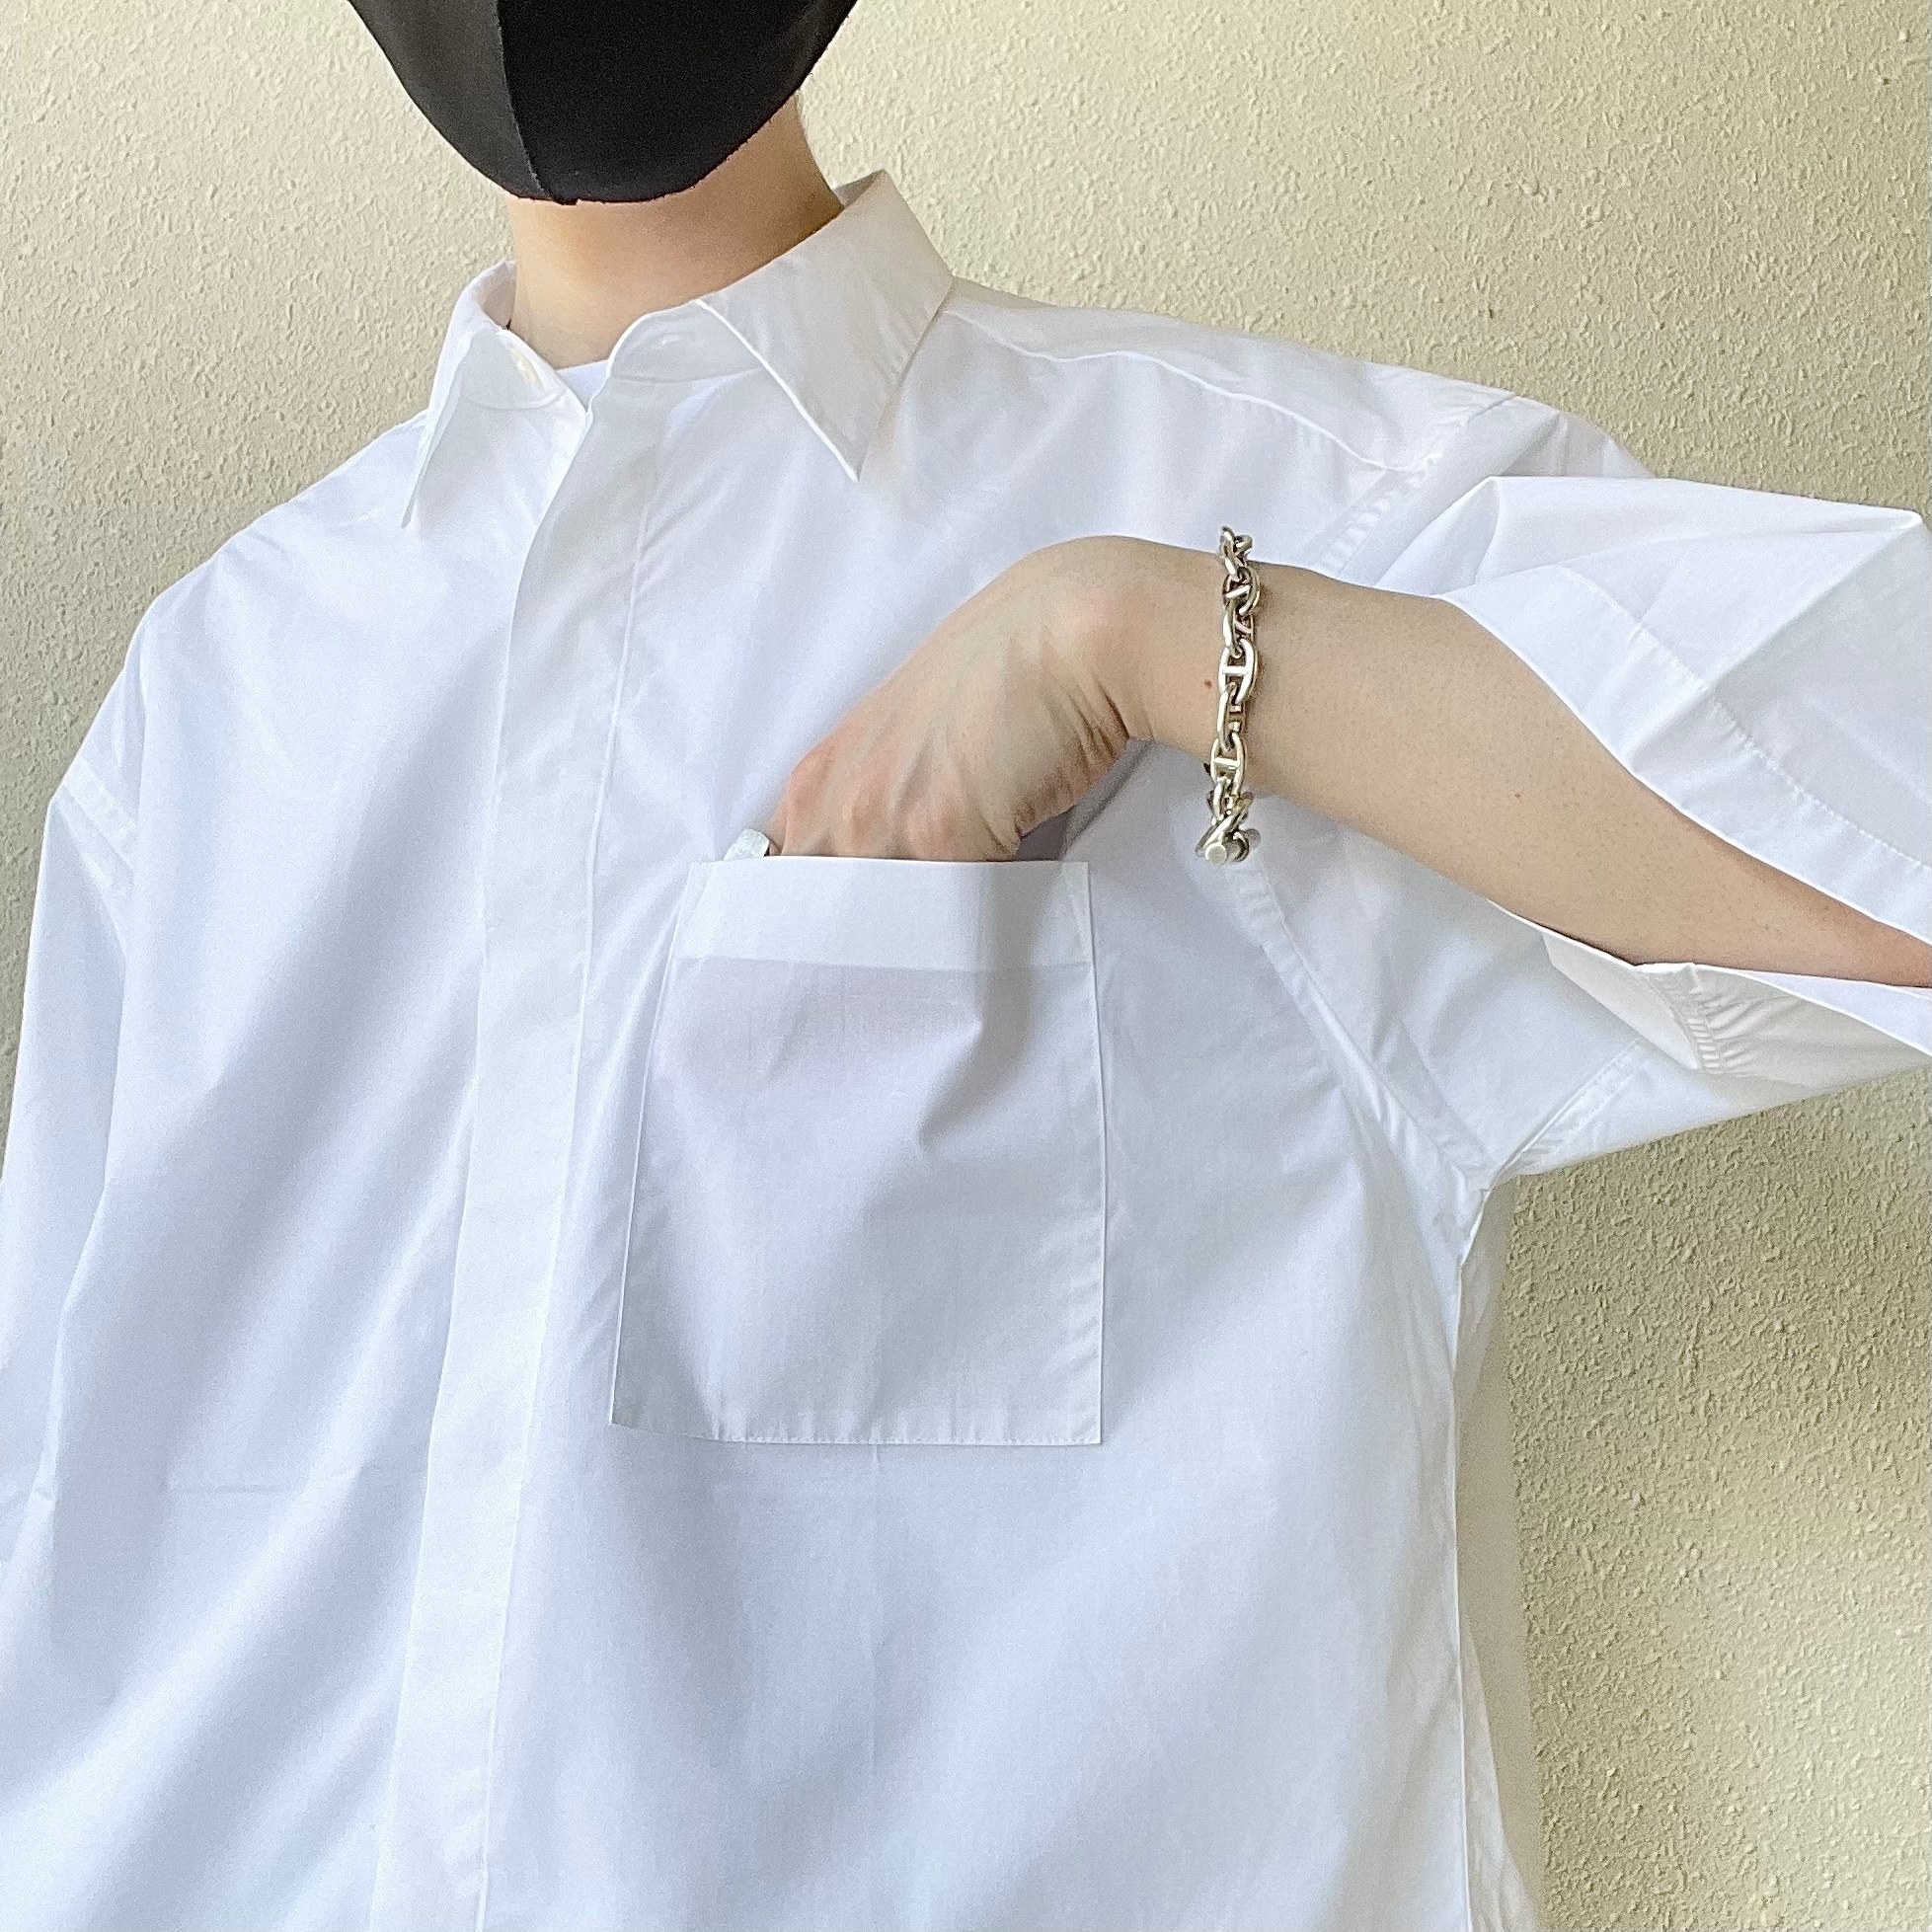 GU（ジーユー）の新作メンズアイテム「ブロードオーバーサイズシャツ（5分袖）」キレイめアイテムで夏コーデにおすすめ